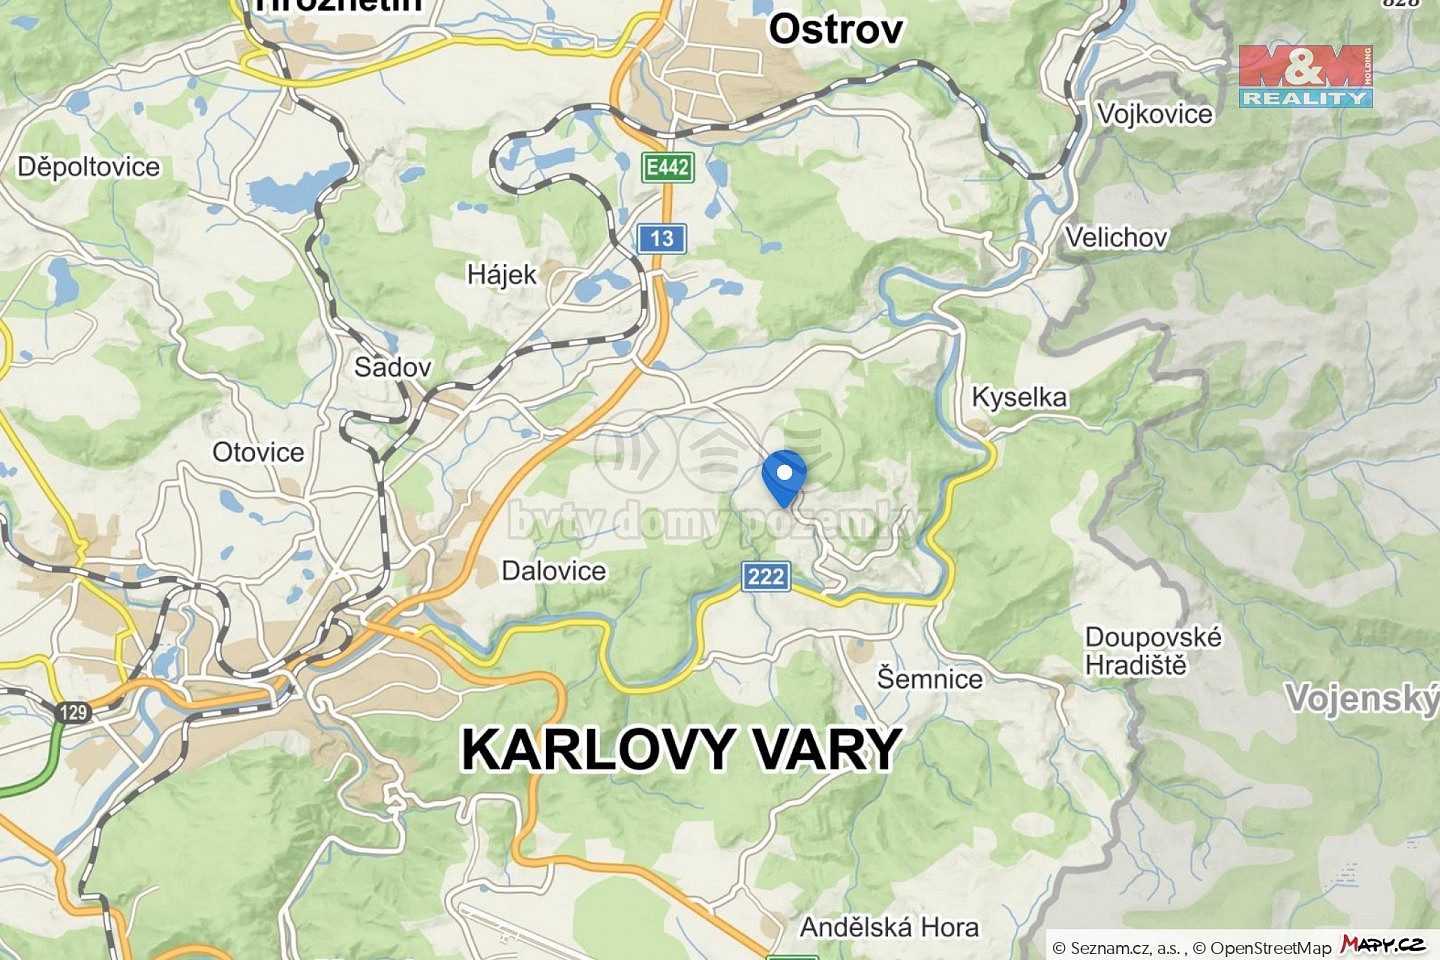 Šemnice - Pulovice, okres Karlovy Vary